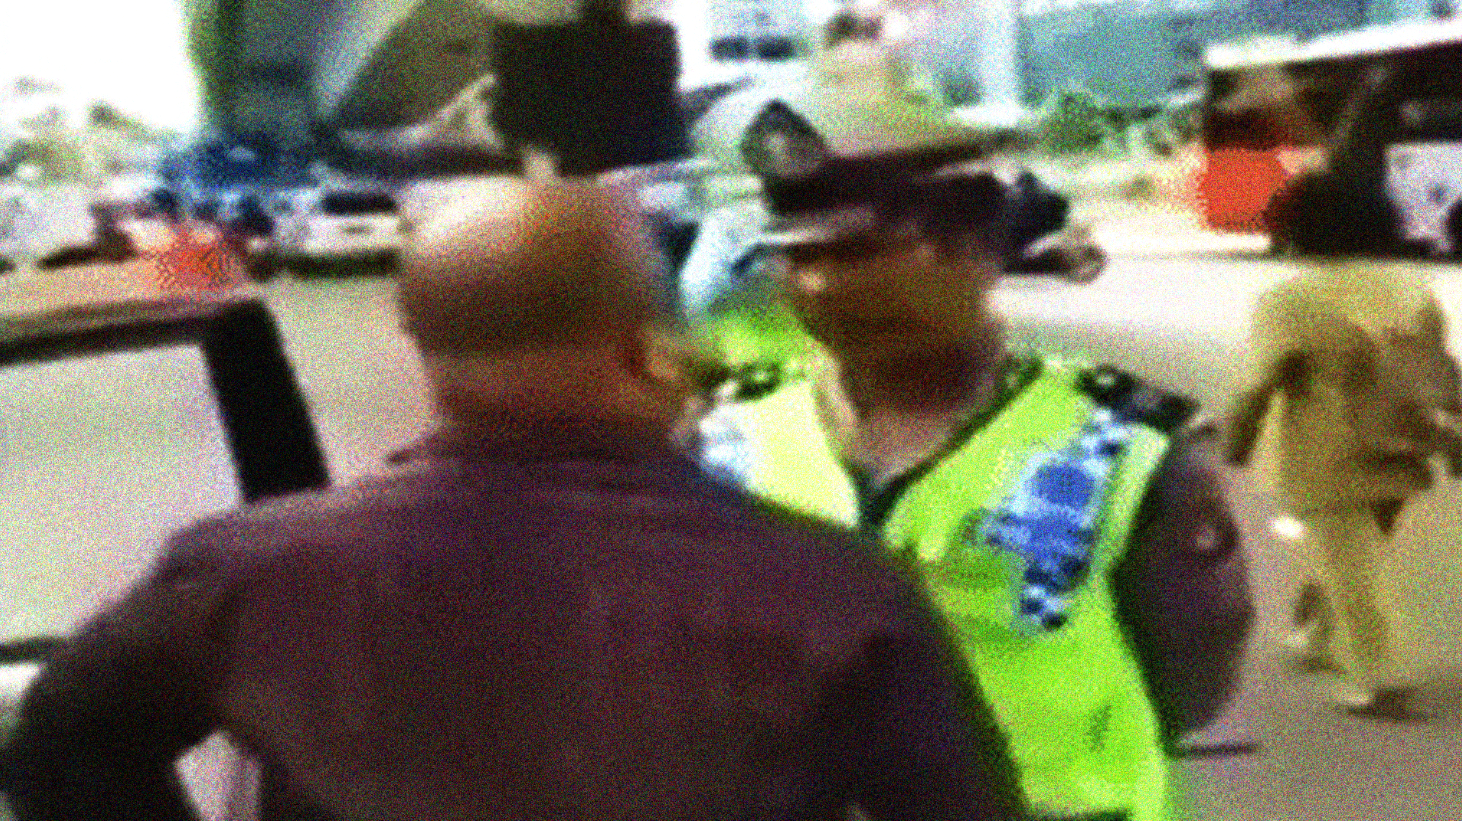 Tangkapan layar pengendara mobil yang menyeruduk polisi karena tak terima akan ditilang. (foto: Youtube)